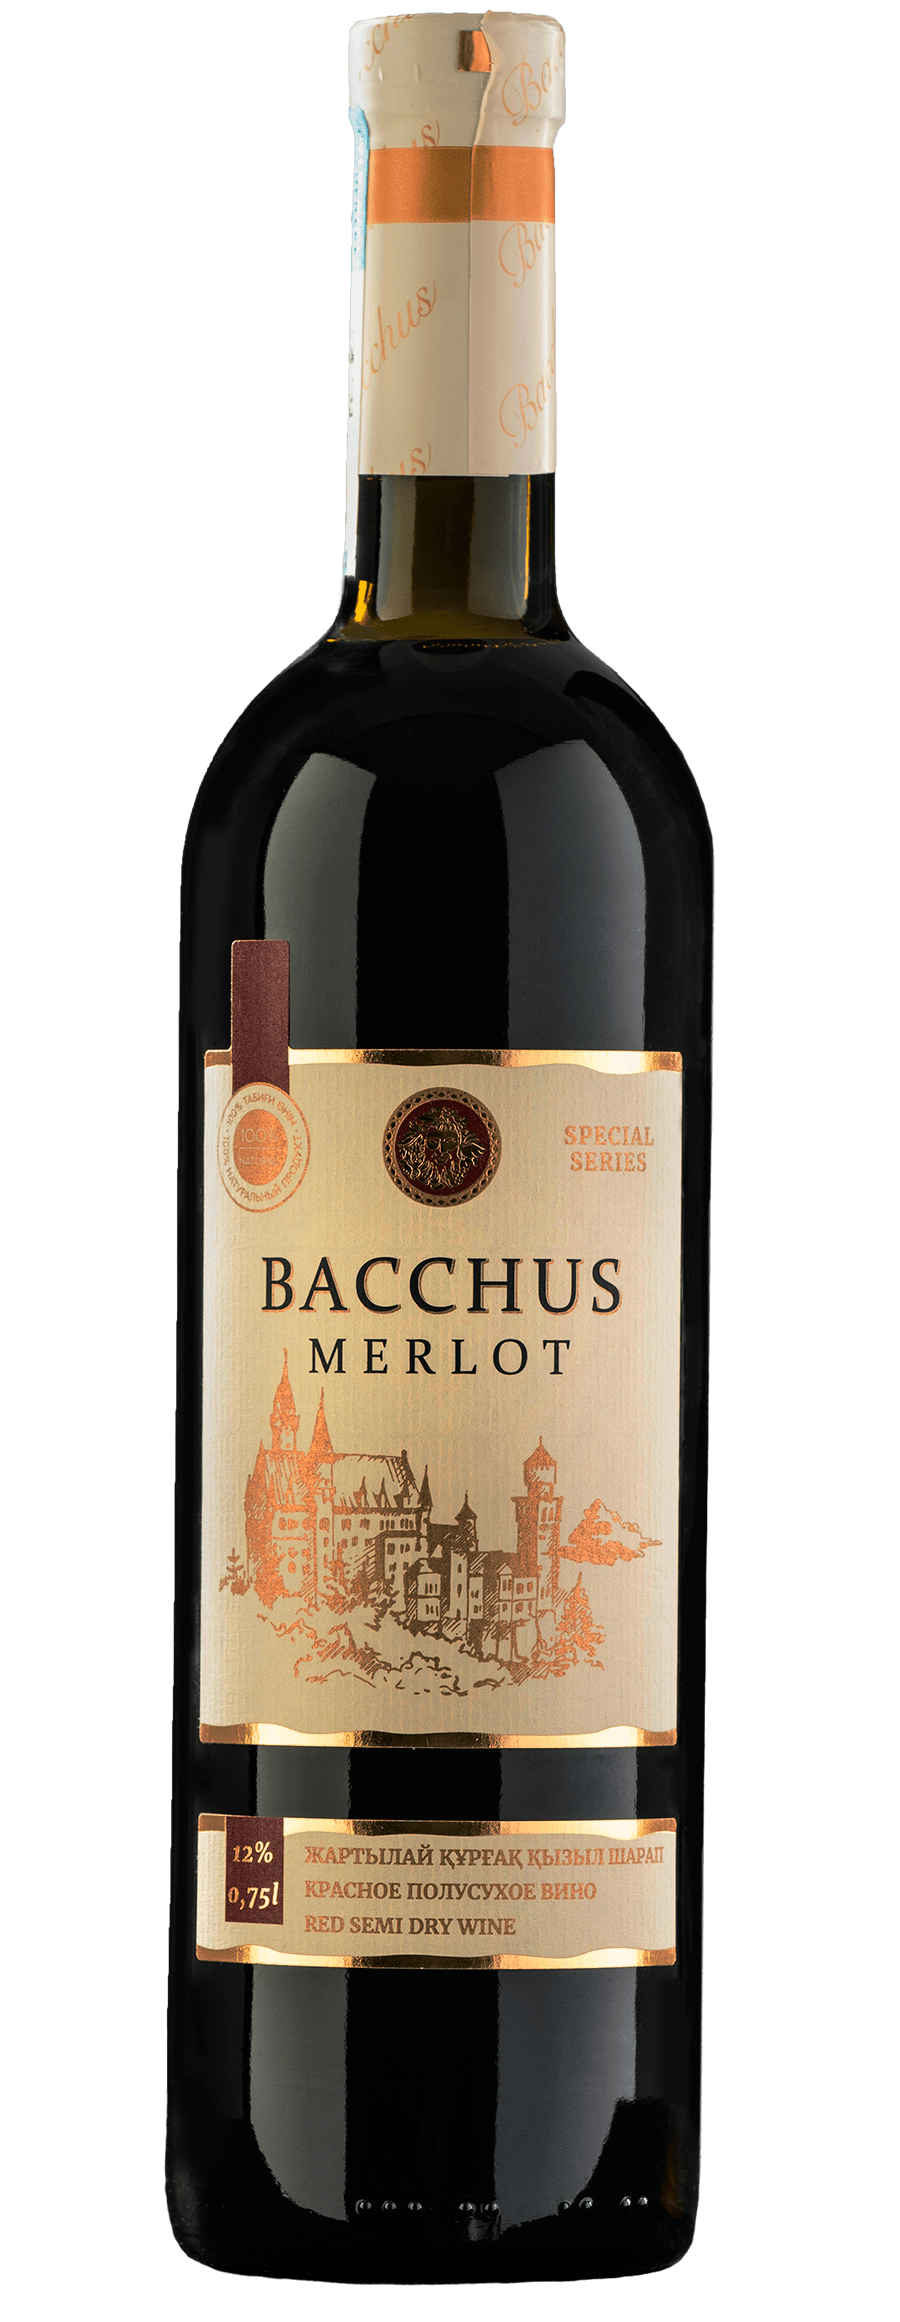 Bacchus Merlot 